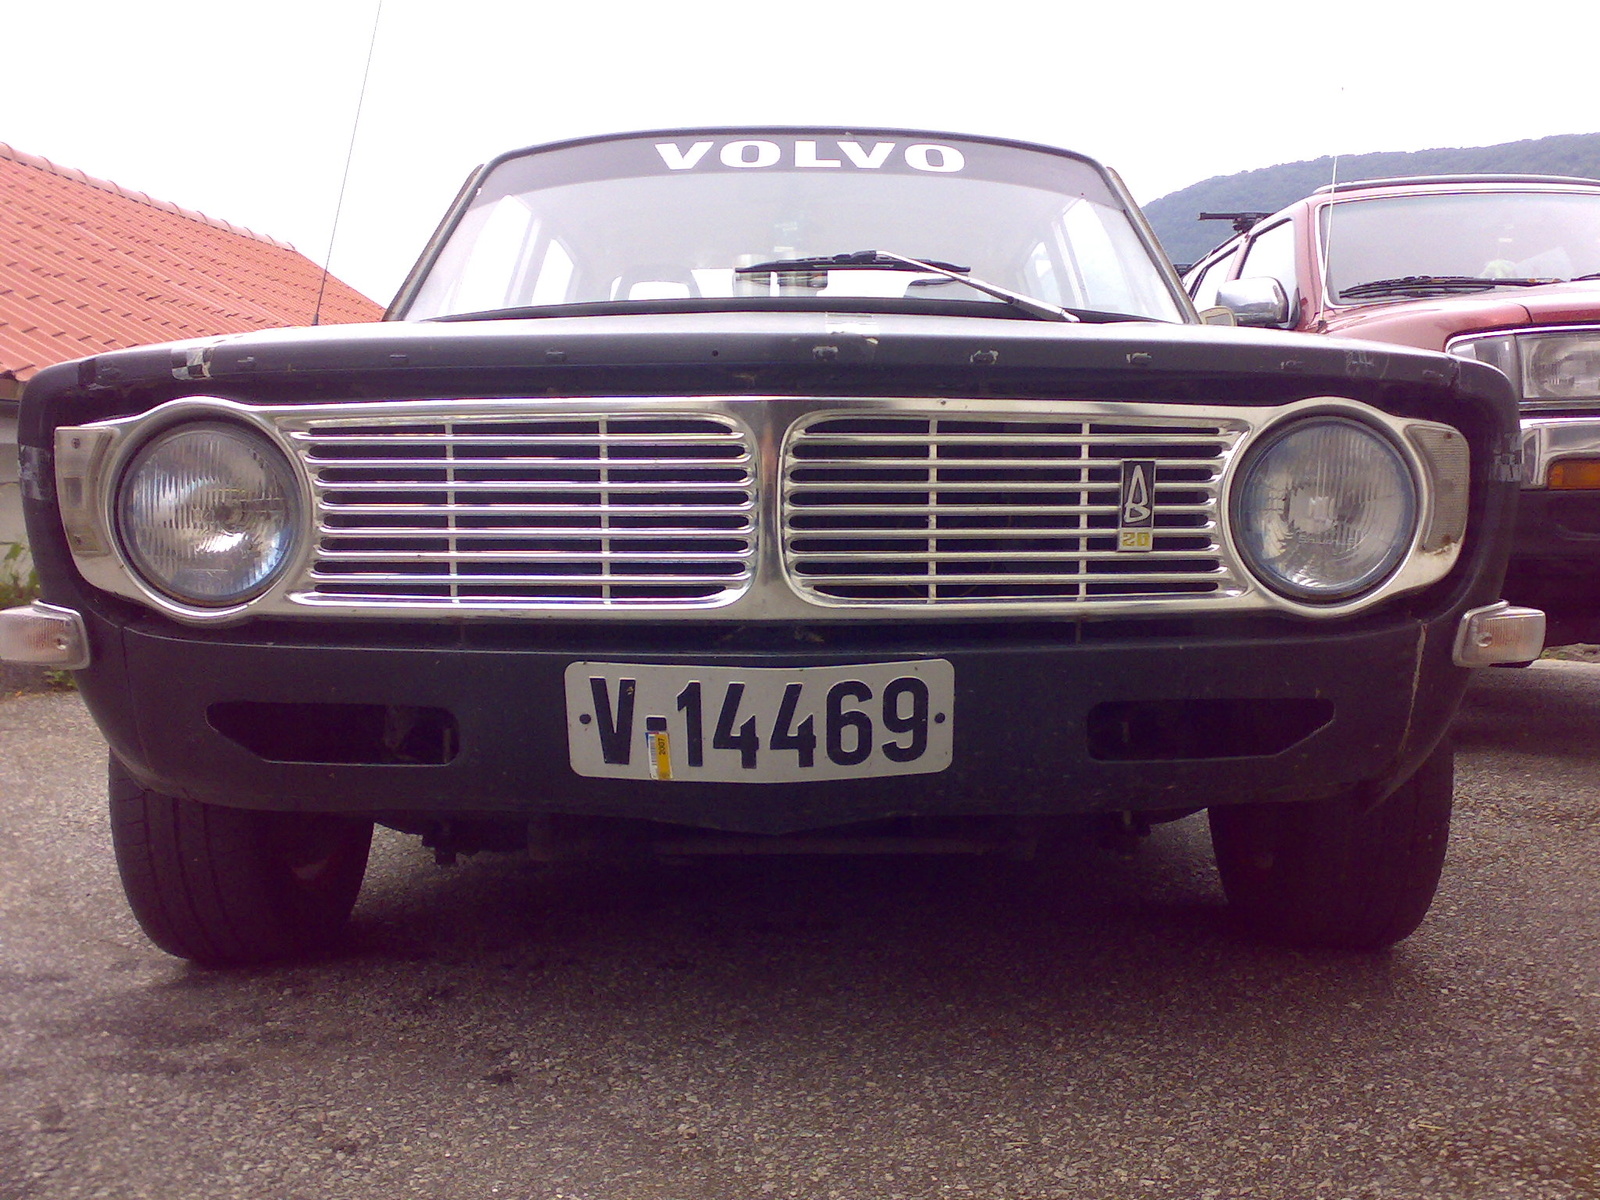 1969 Volvo 144 - Pictures - 1969 Volvo 144 picture - CarGurus